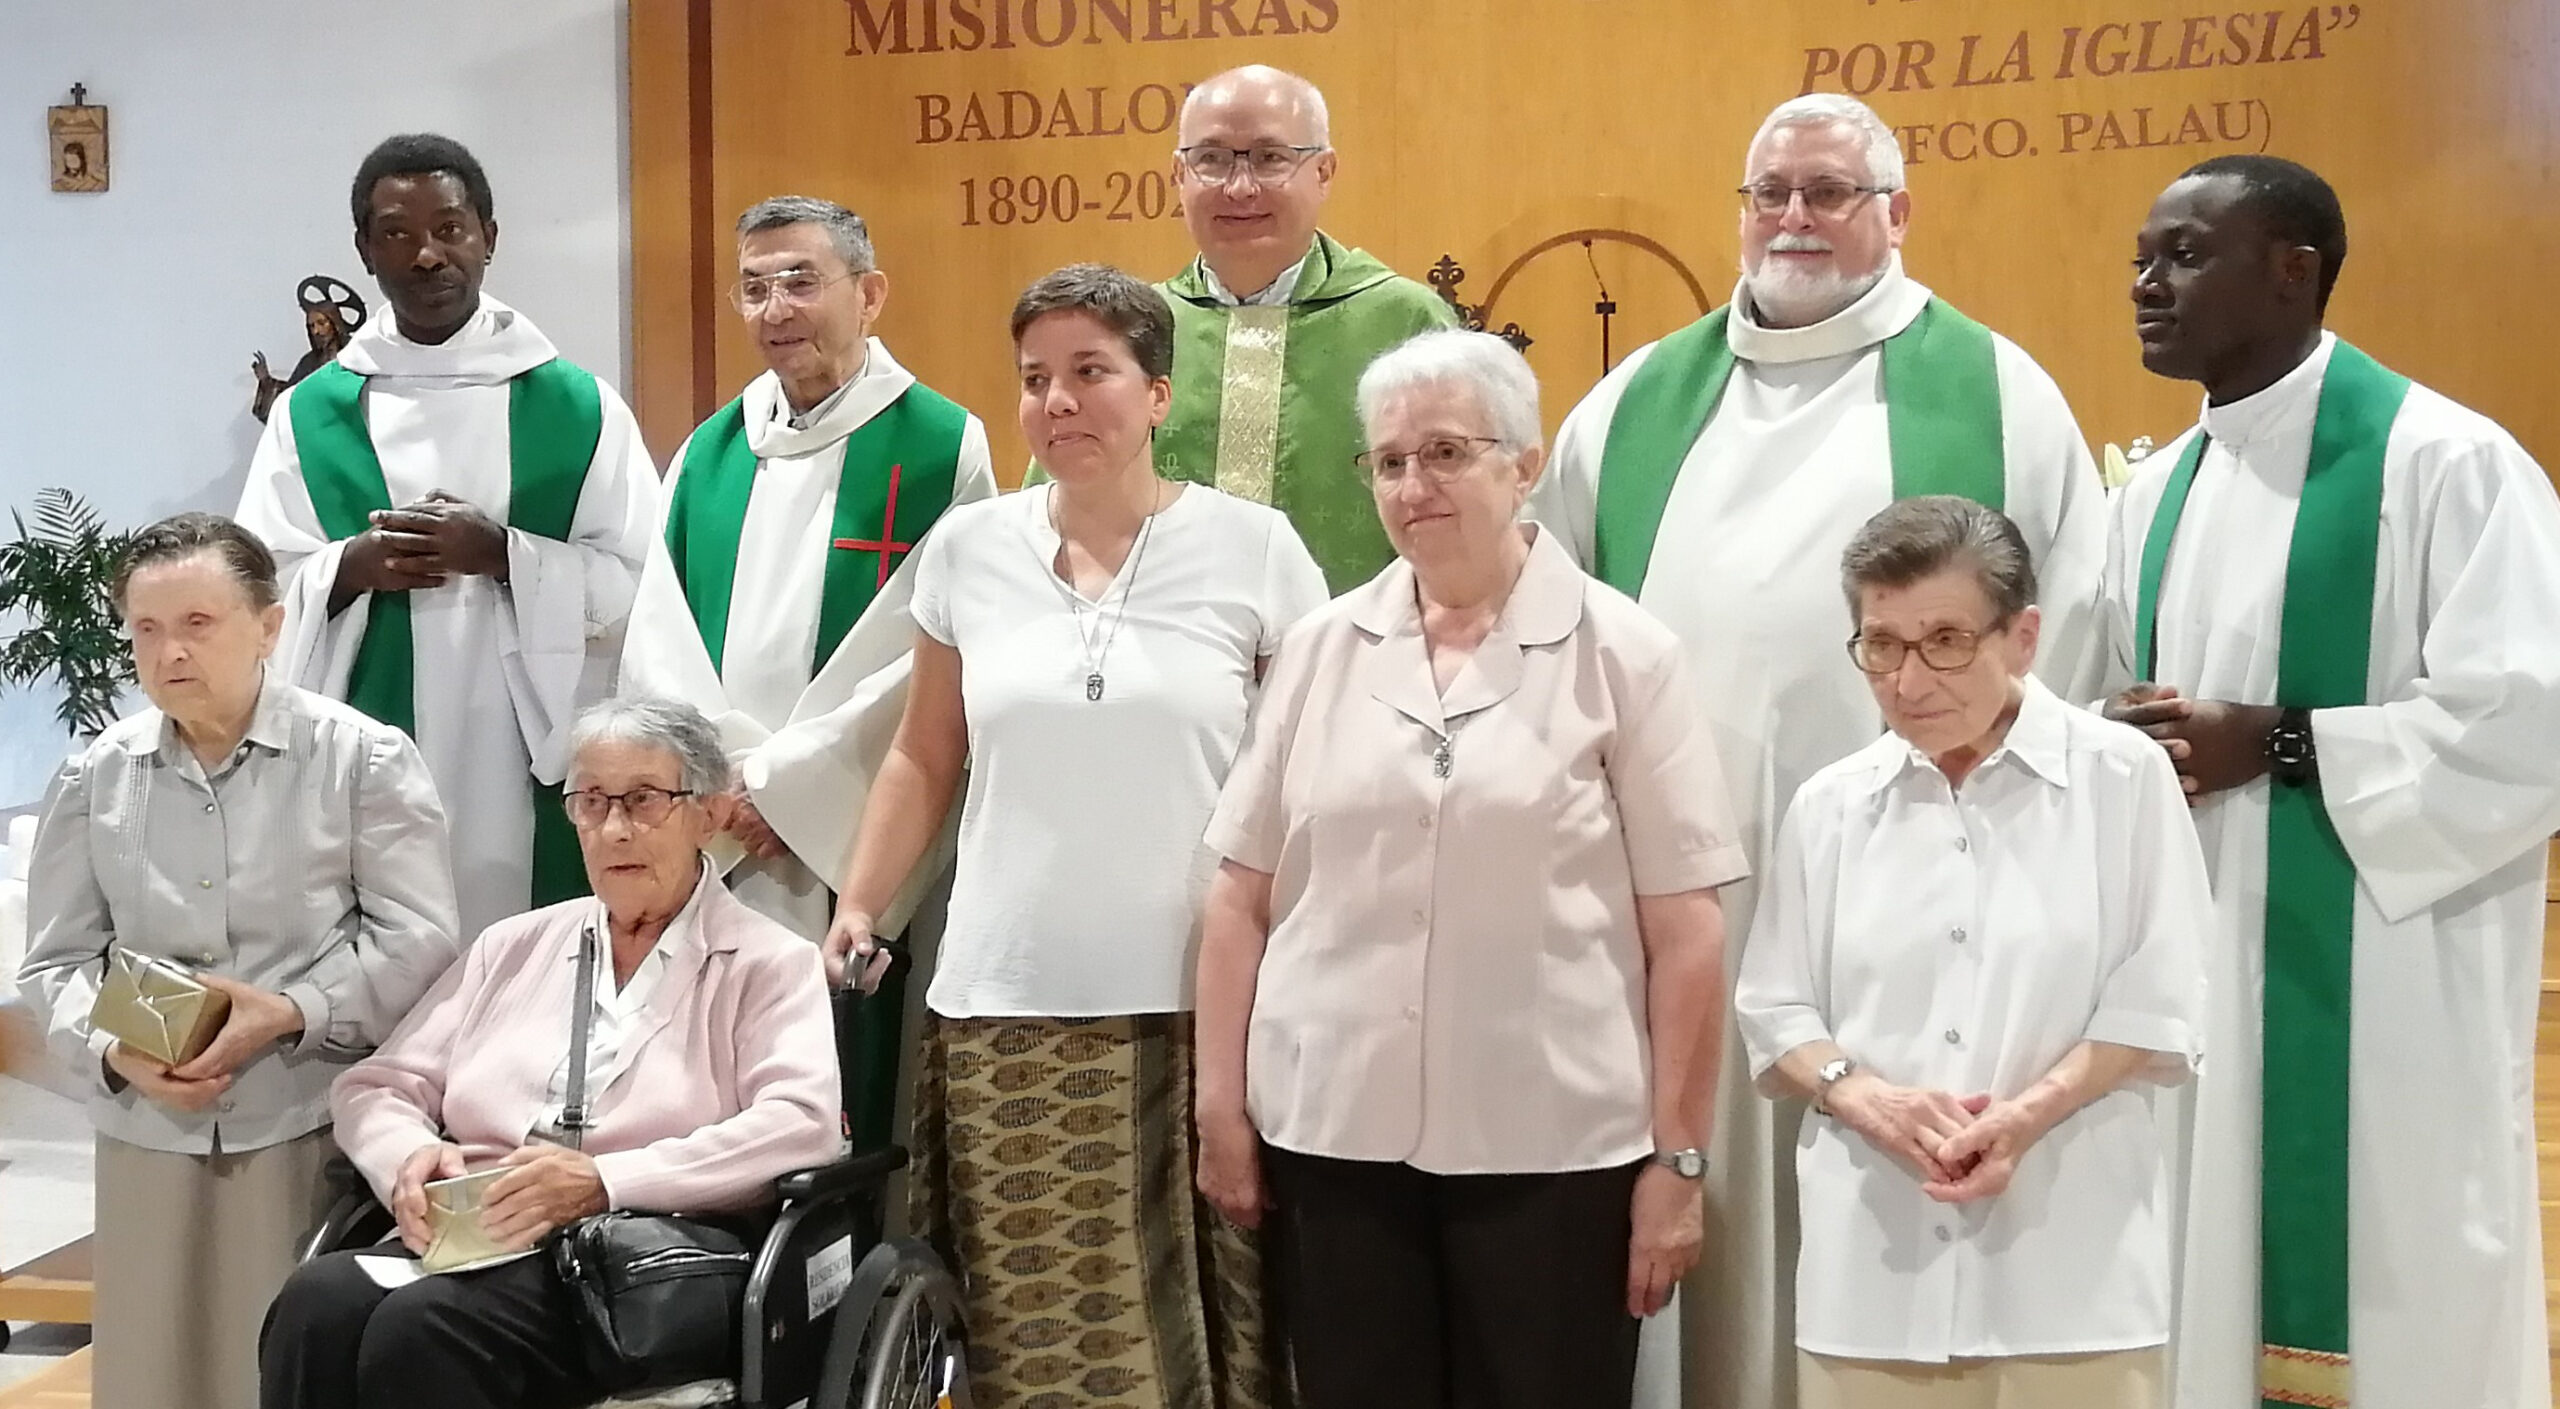 Després de 132 anys de presència a Badalona, el diumenge dia 25 de setembre les Carmelites Missioneres, fundades pel carmelita descalç beat Francesc Palau, s'acomiadaren de la nostra ciutat..